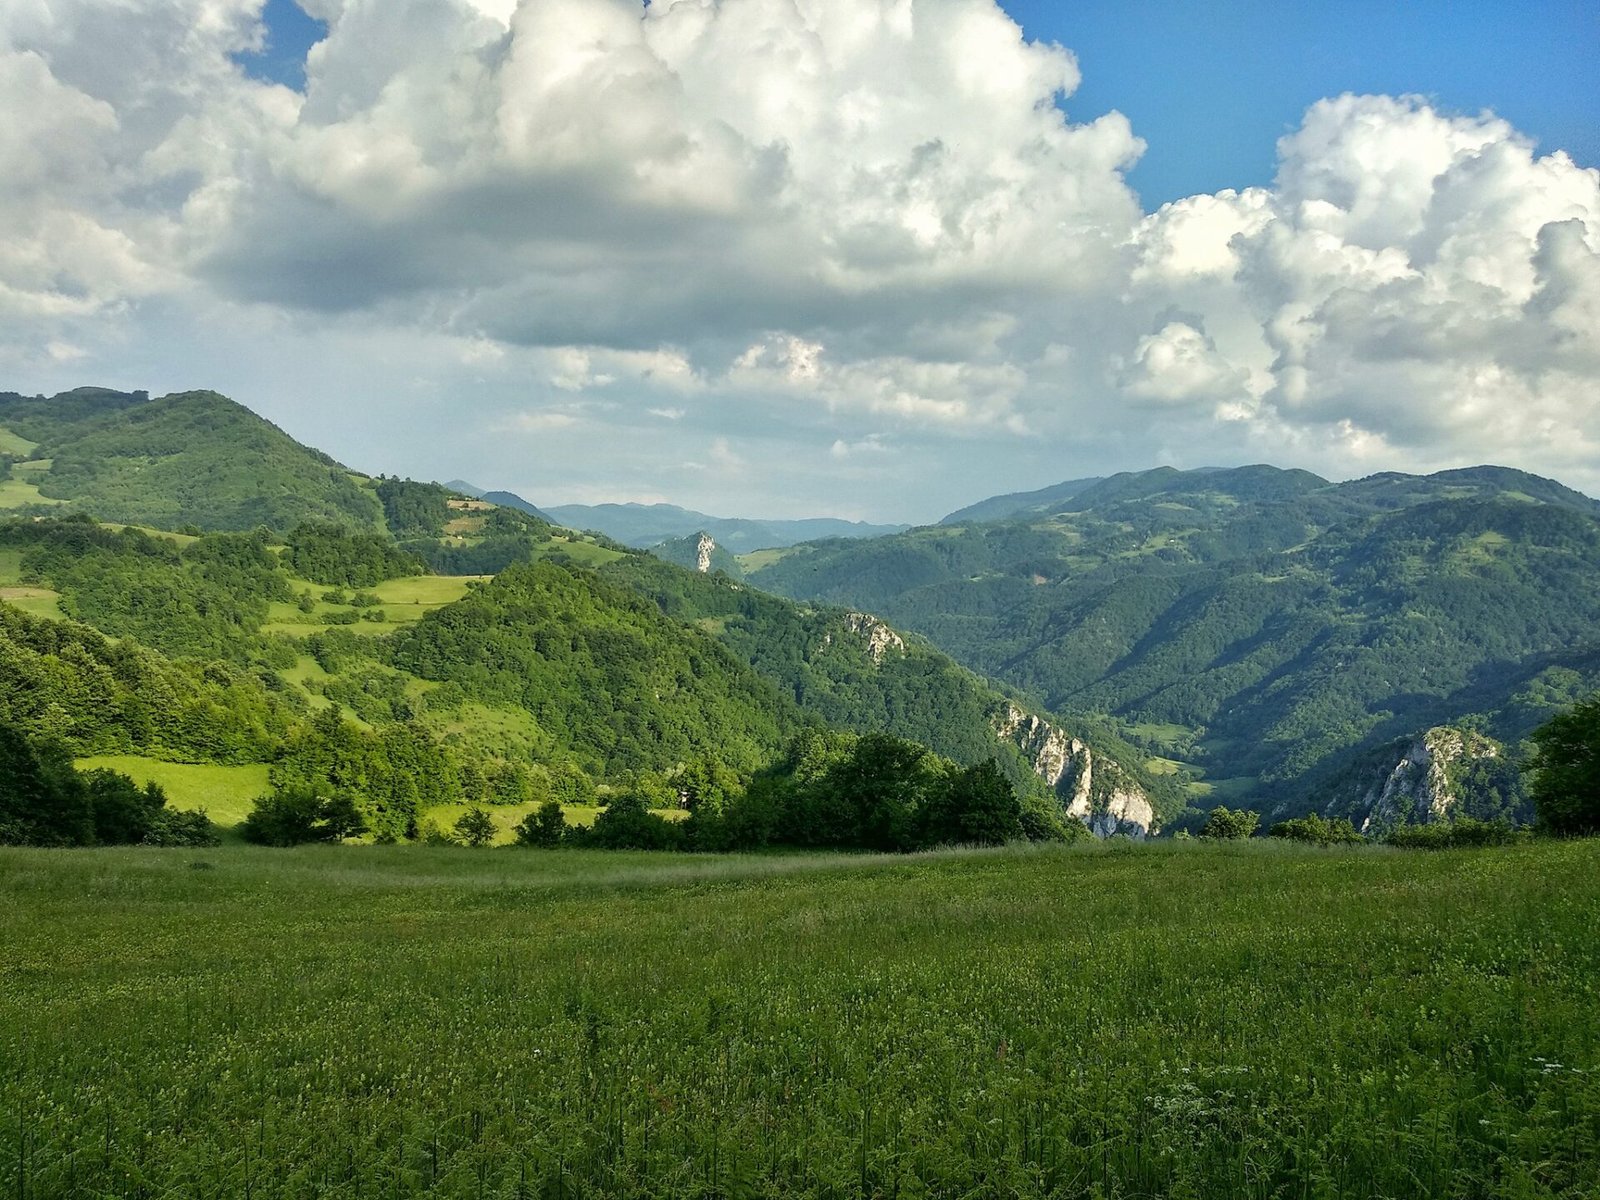 Sokolske mountains  – along the roads of Podrinje, Rožanj peak 973 m